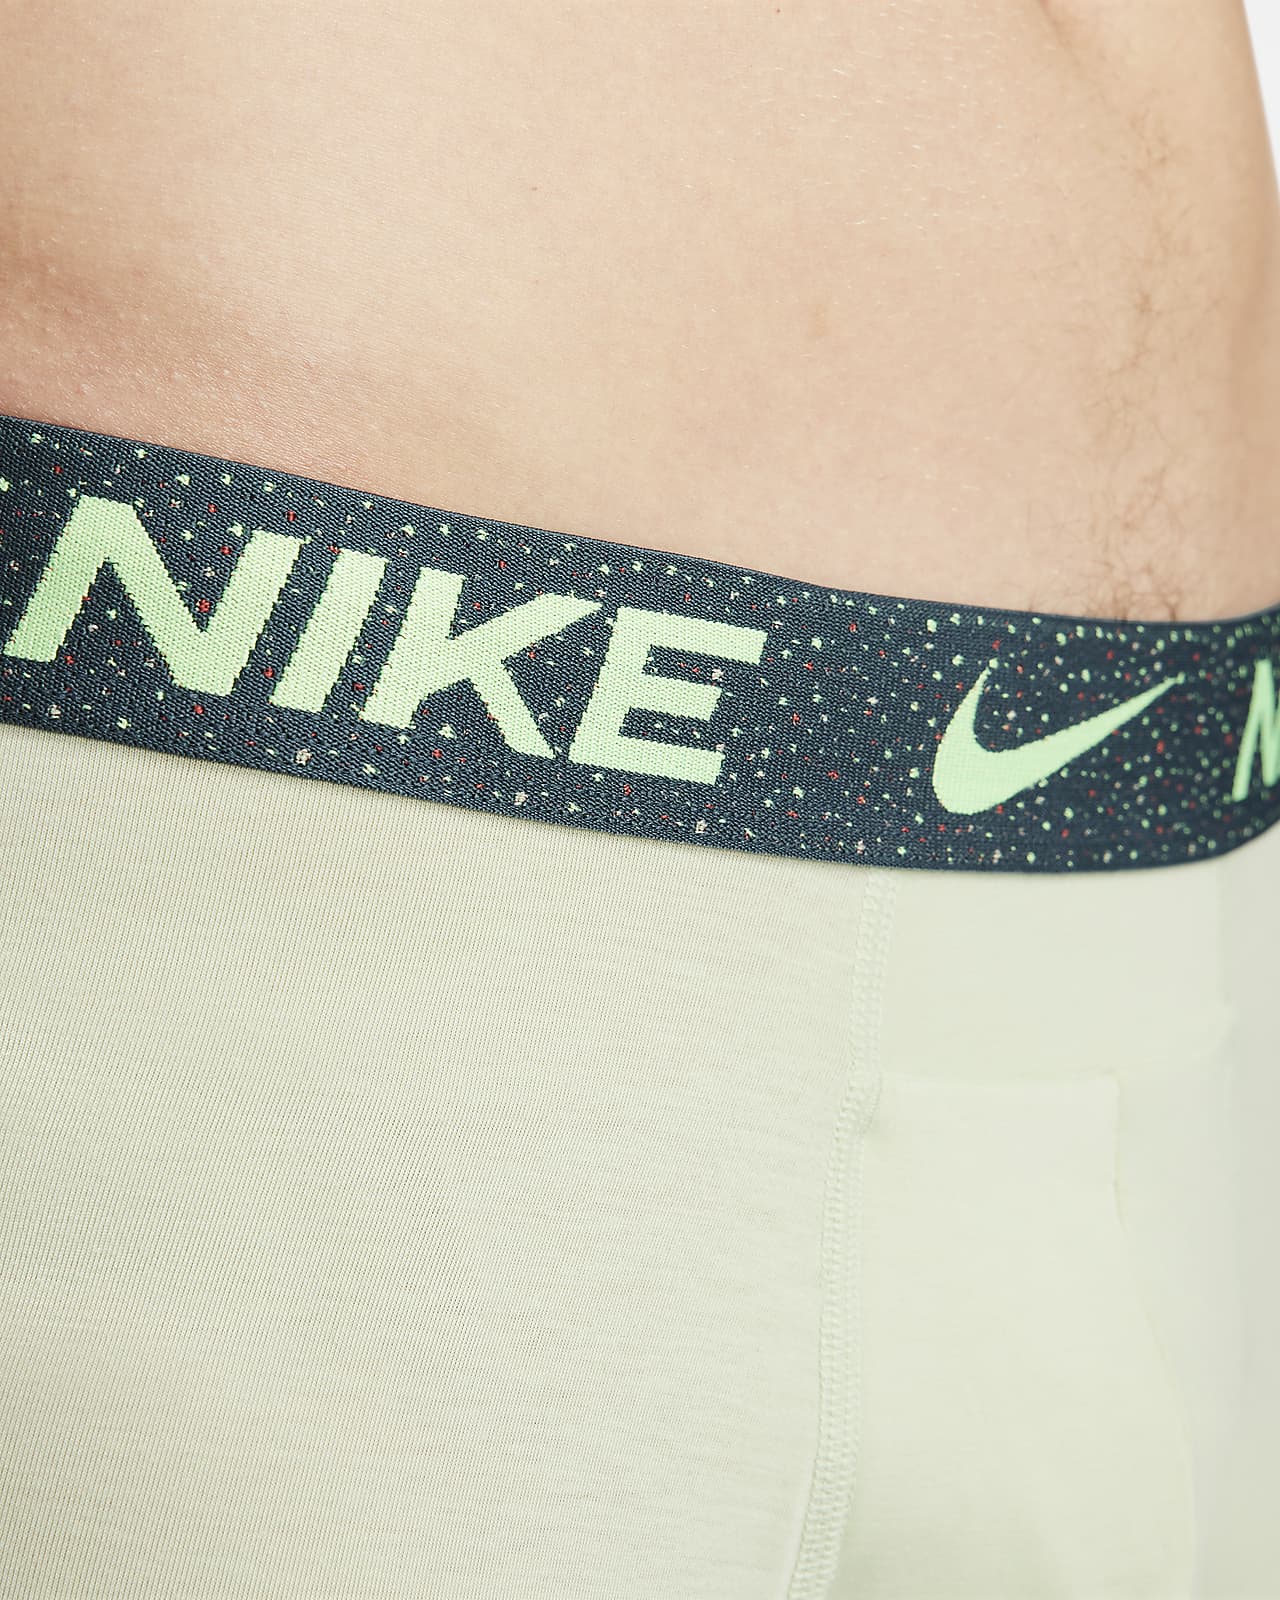 Nike Boxer Dri-Fit Luxe en coton modal pour homme, Noir, Grand : :  Mode